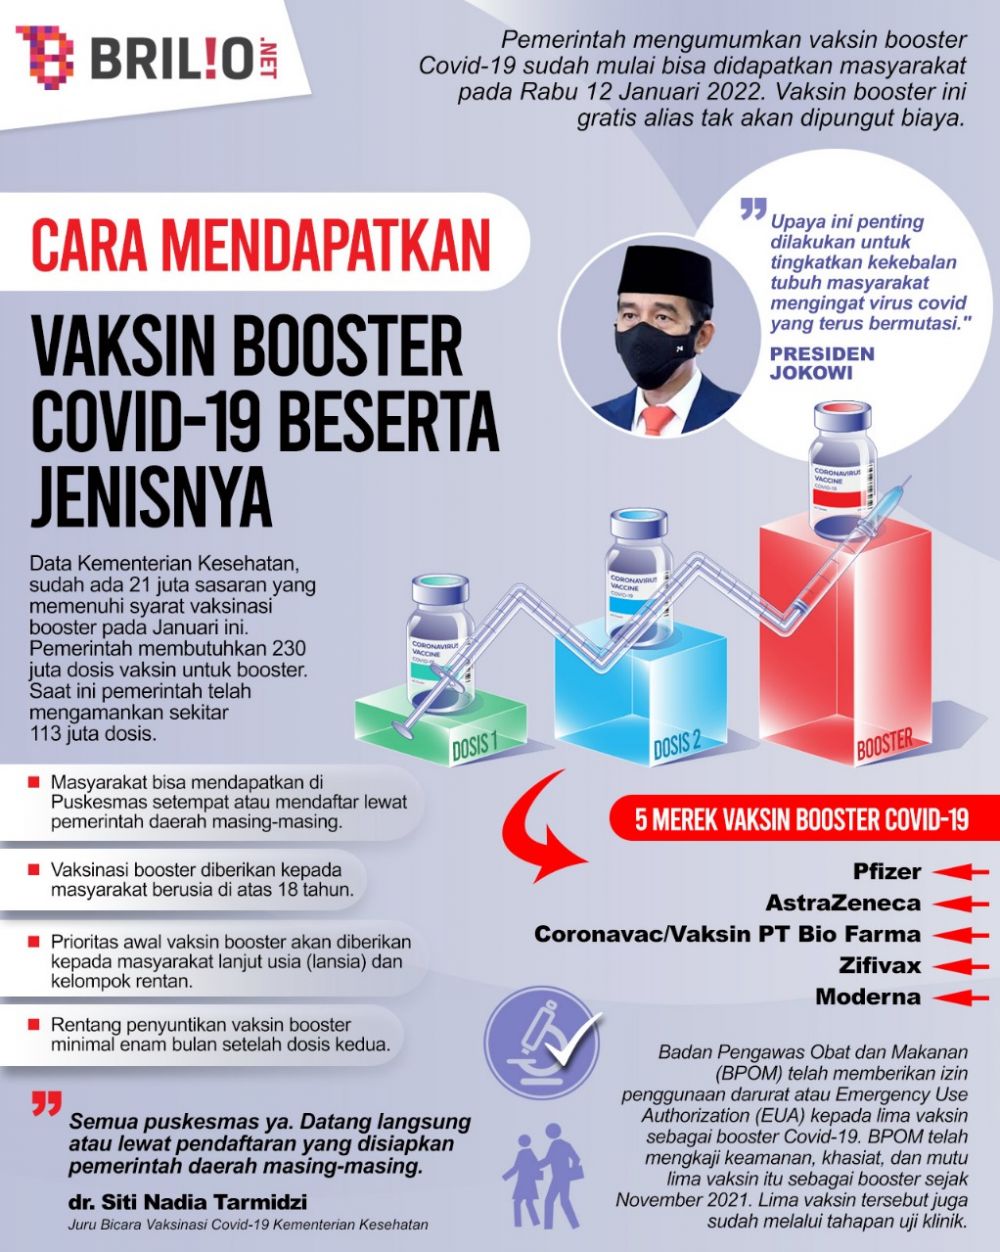 Cara mendapatkan vaksin booster Covid-19 gratis